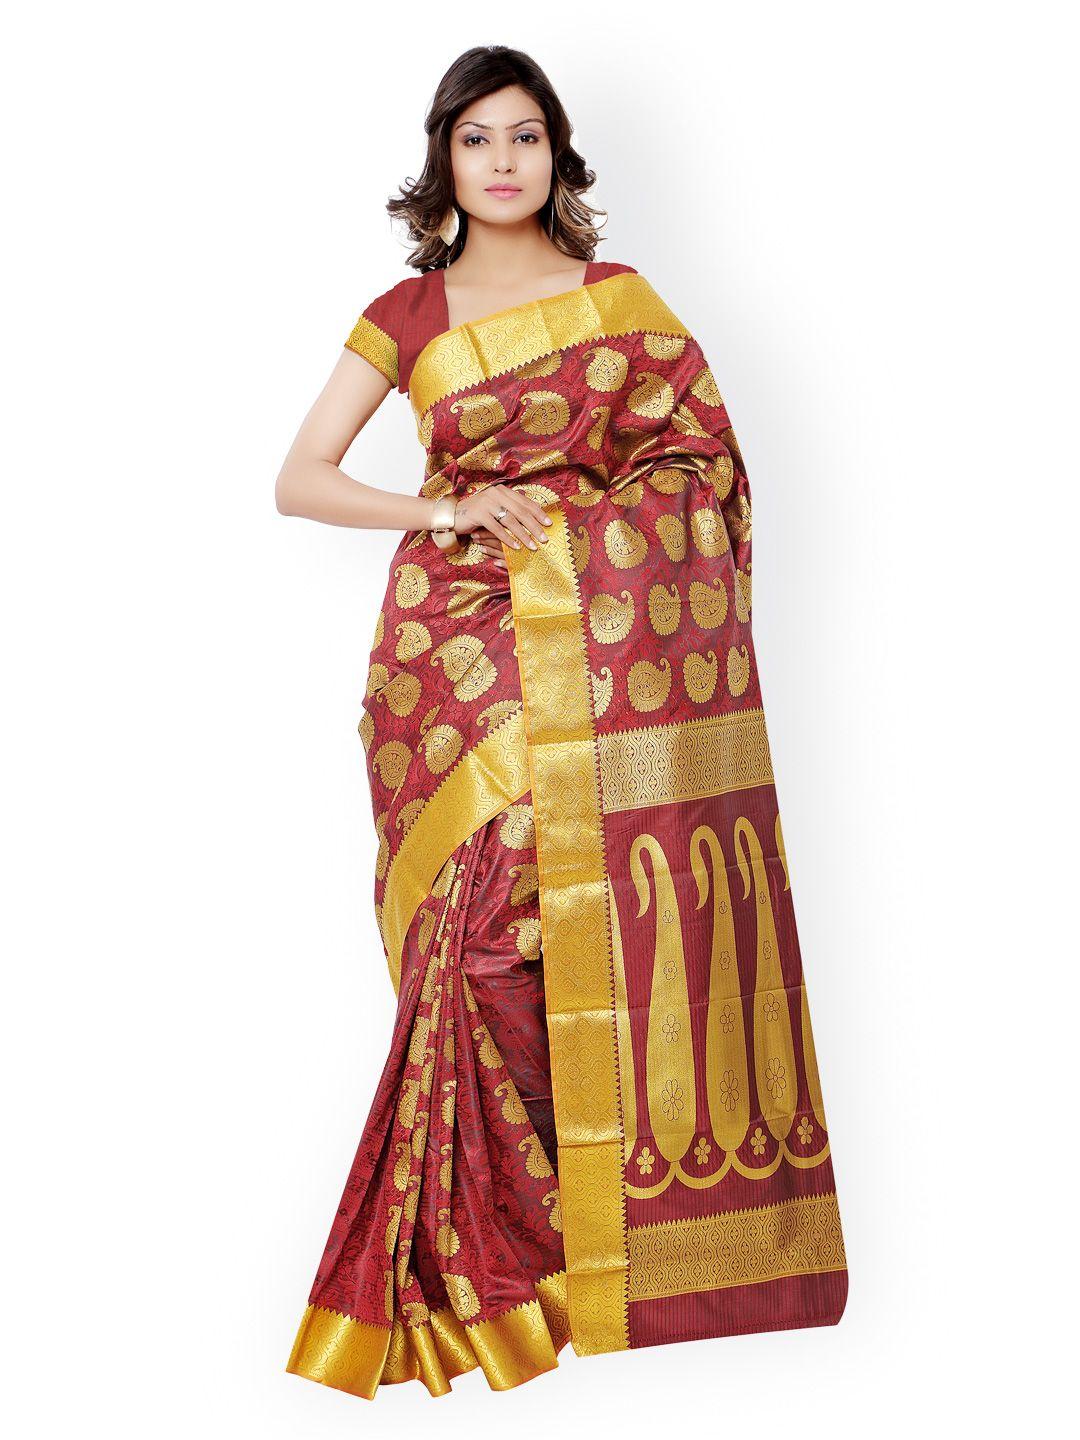 varkala silk sarees red kanjeevaram art silk & jacquard traditional saree